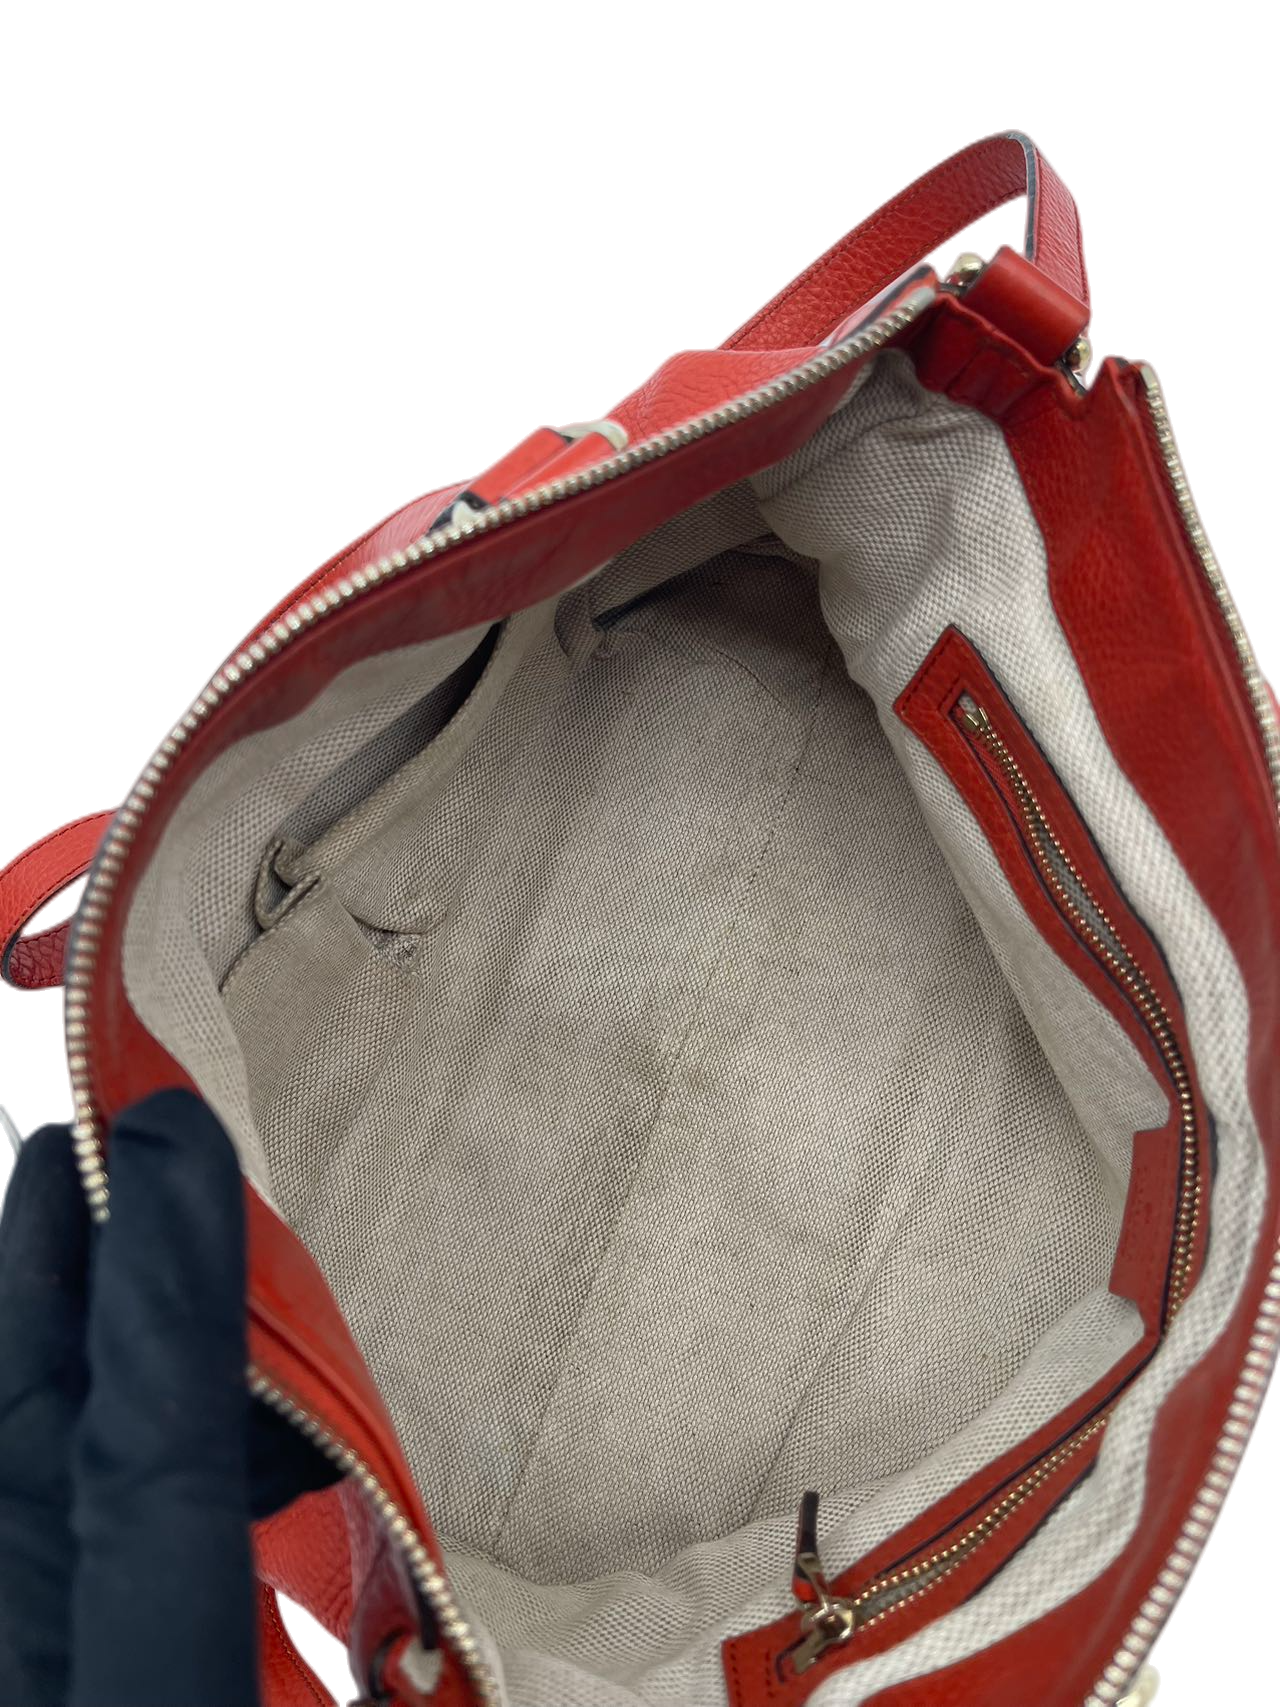 Preloved Gucci GG Logo Leather Soho Tote Shoulder Bag